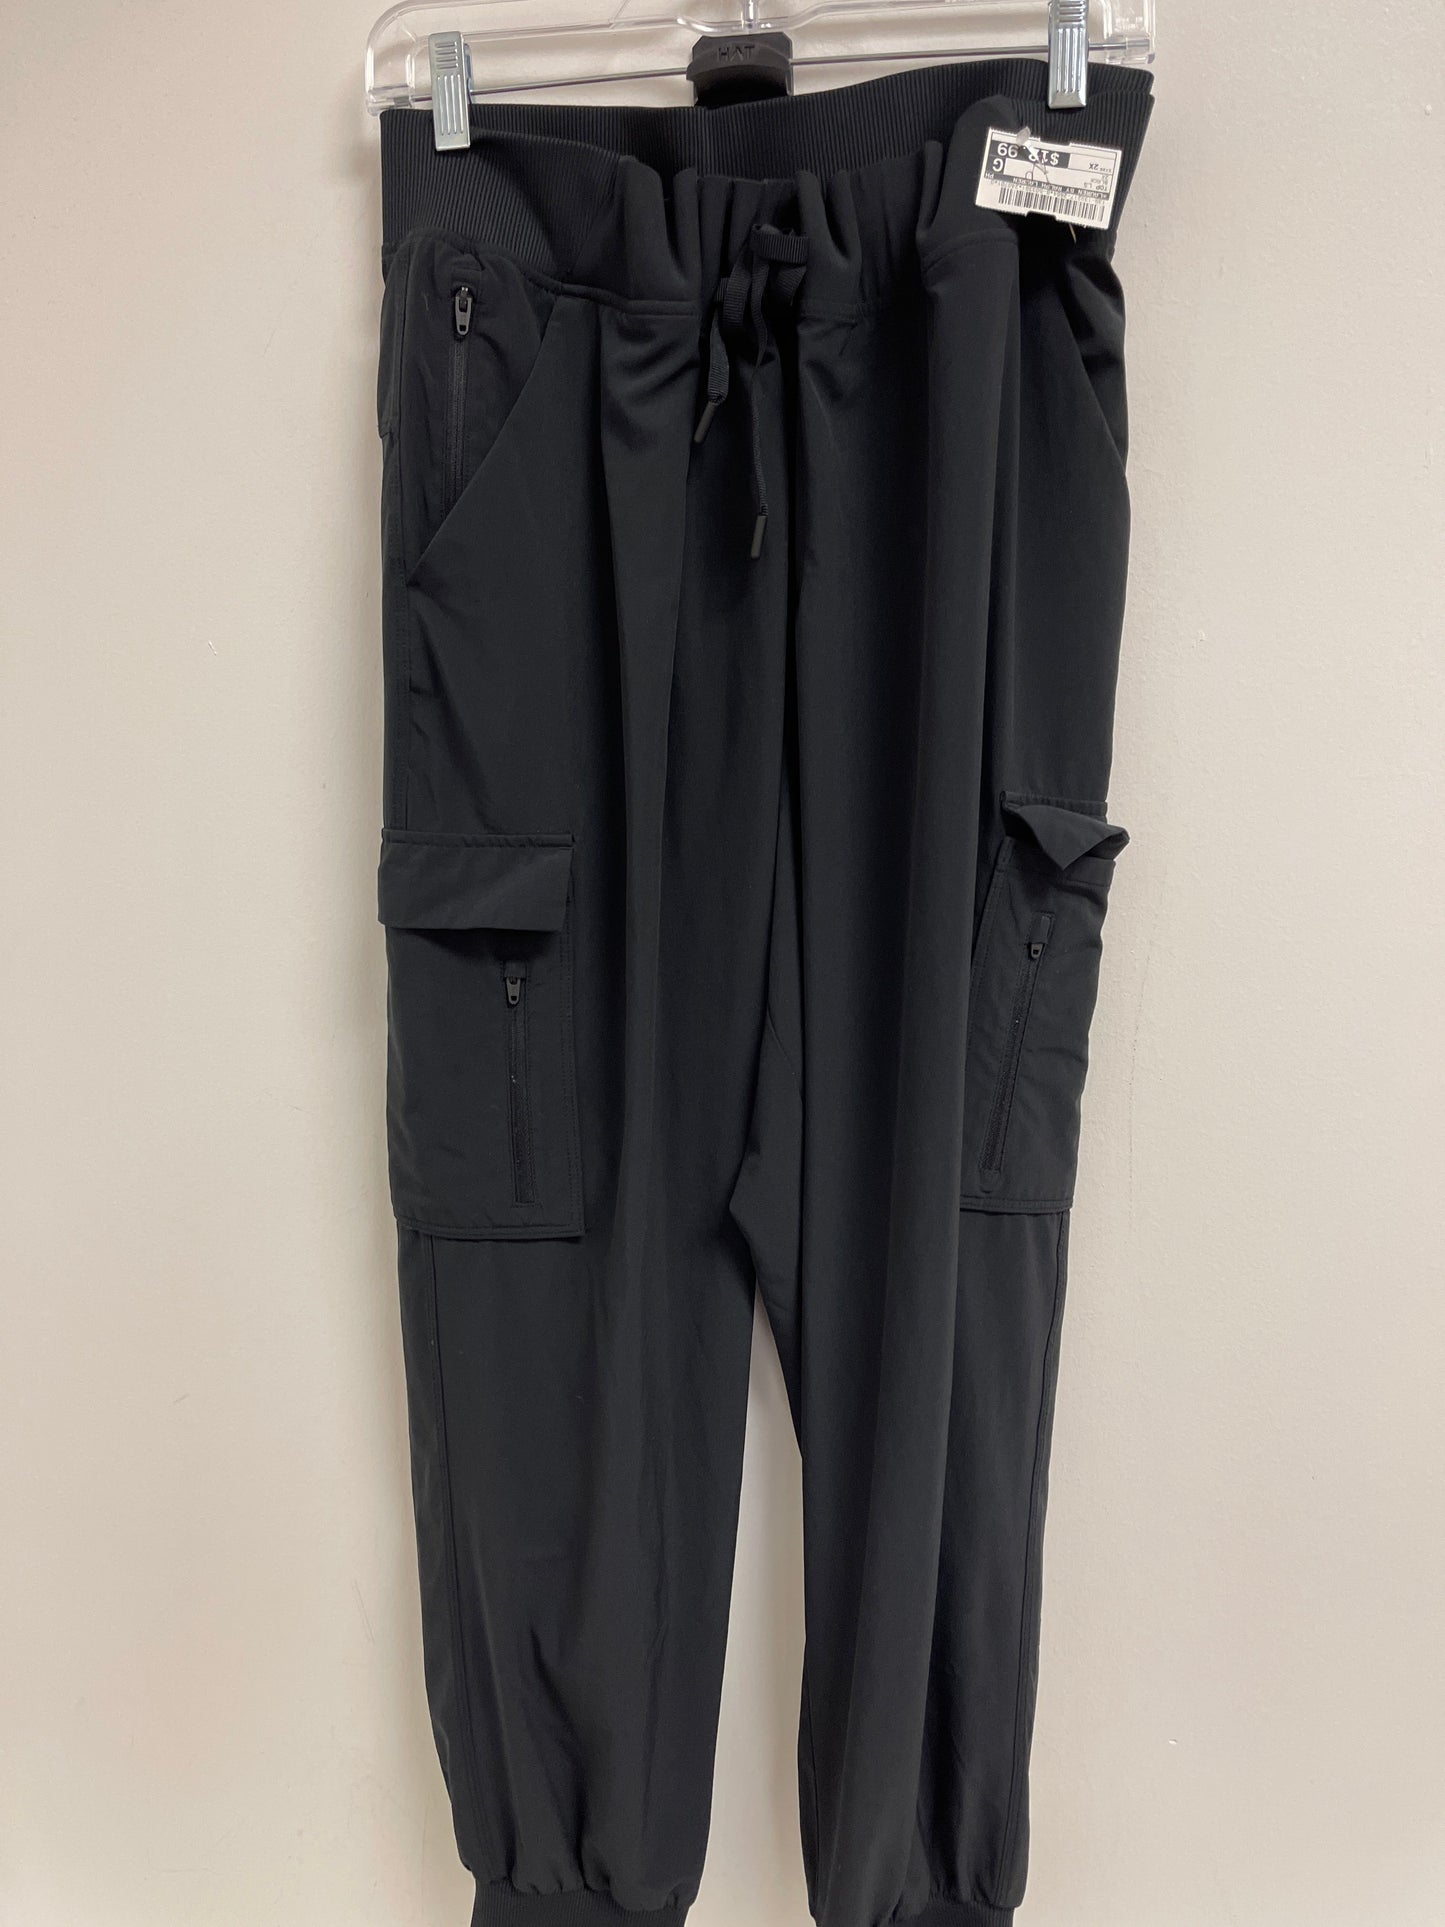 Black Top Long Sleeve Lauren By Ralph Lauren, Size 2x